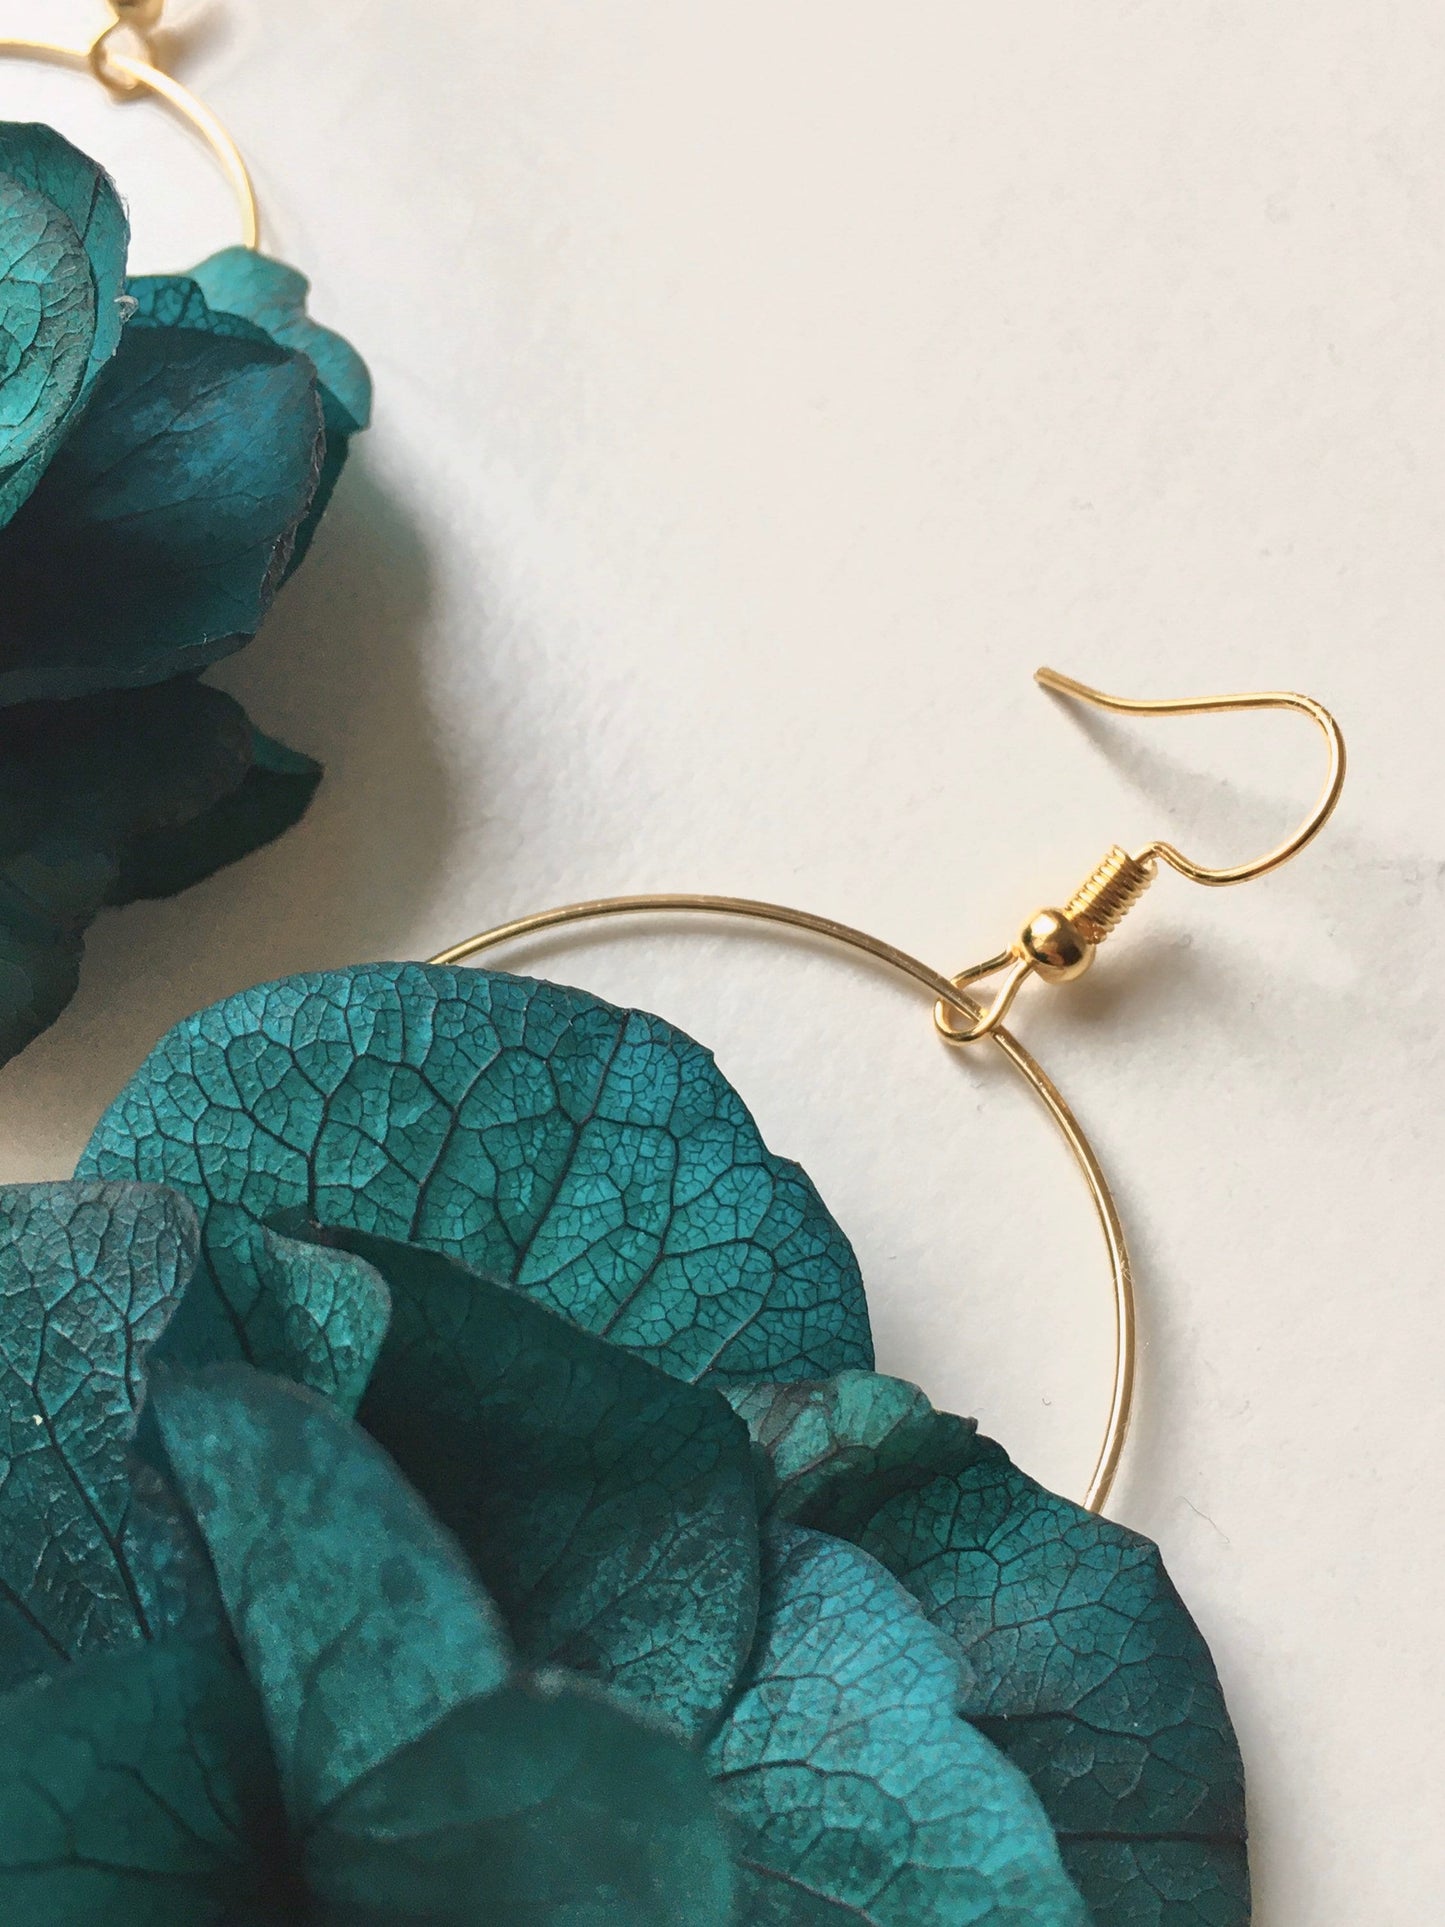 Emerald Green Gold Earrings Bridesmaids Gift, Bespoke Wedding Accessories, Real Flower Fine Jewellery UK, Flower Hoop Earrings Teal